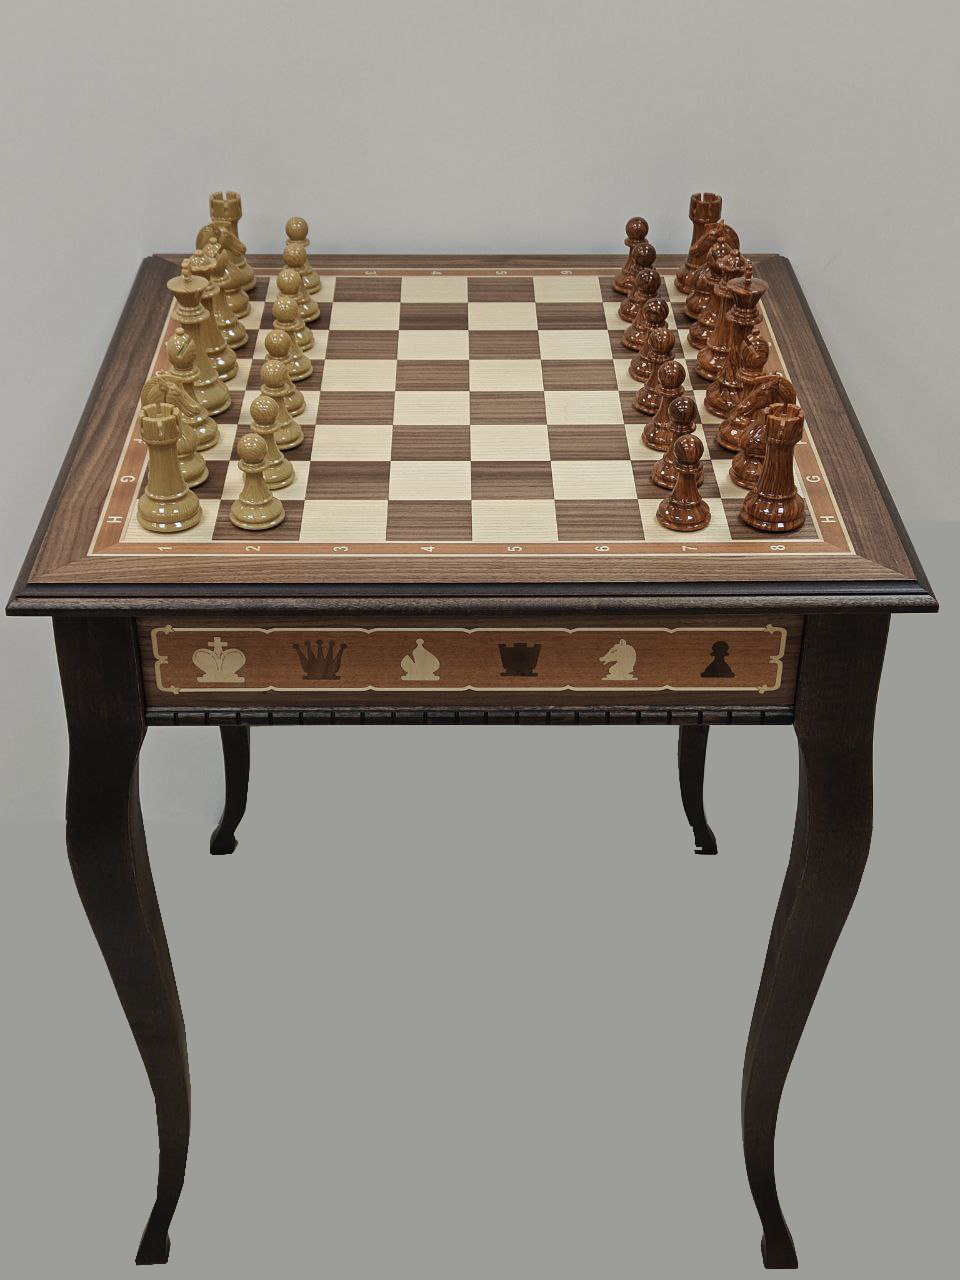 Шахматный стол Lavochkashop подарочный из американского ореха с фигурами из композита